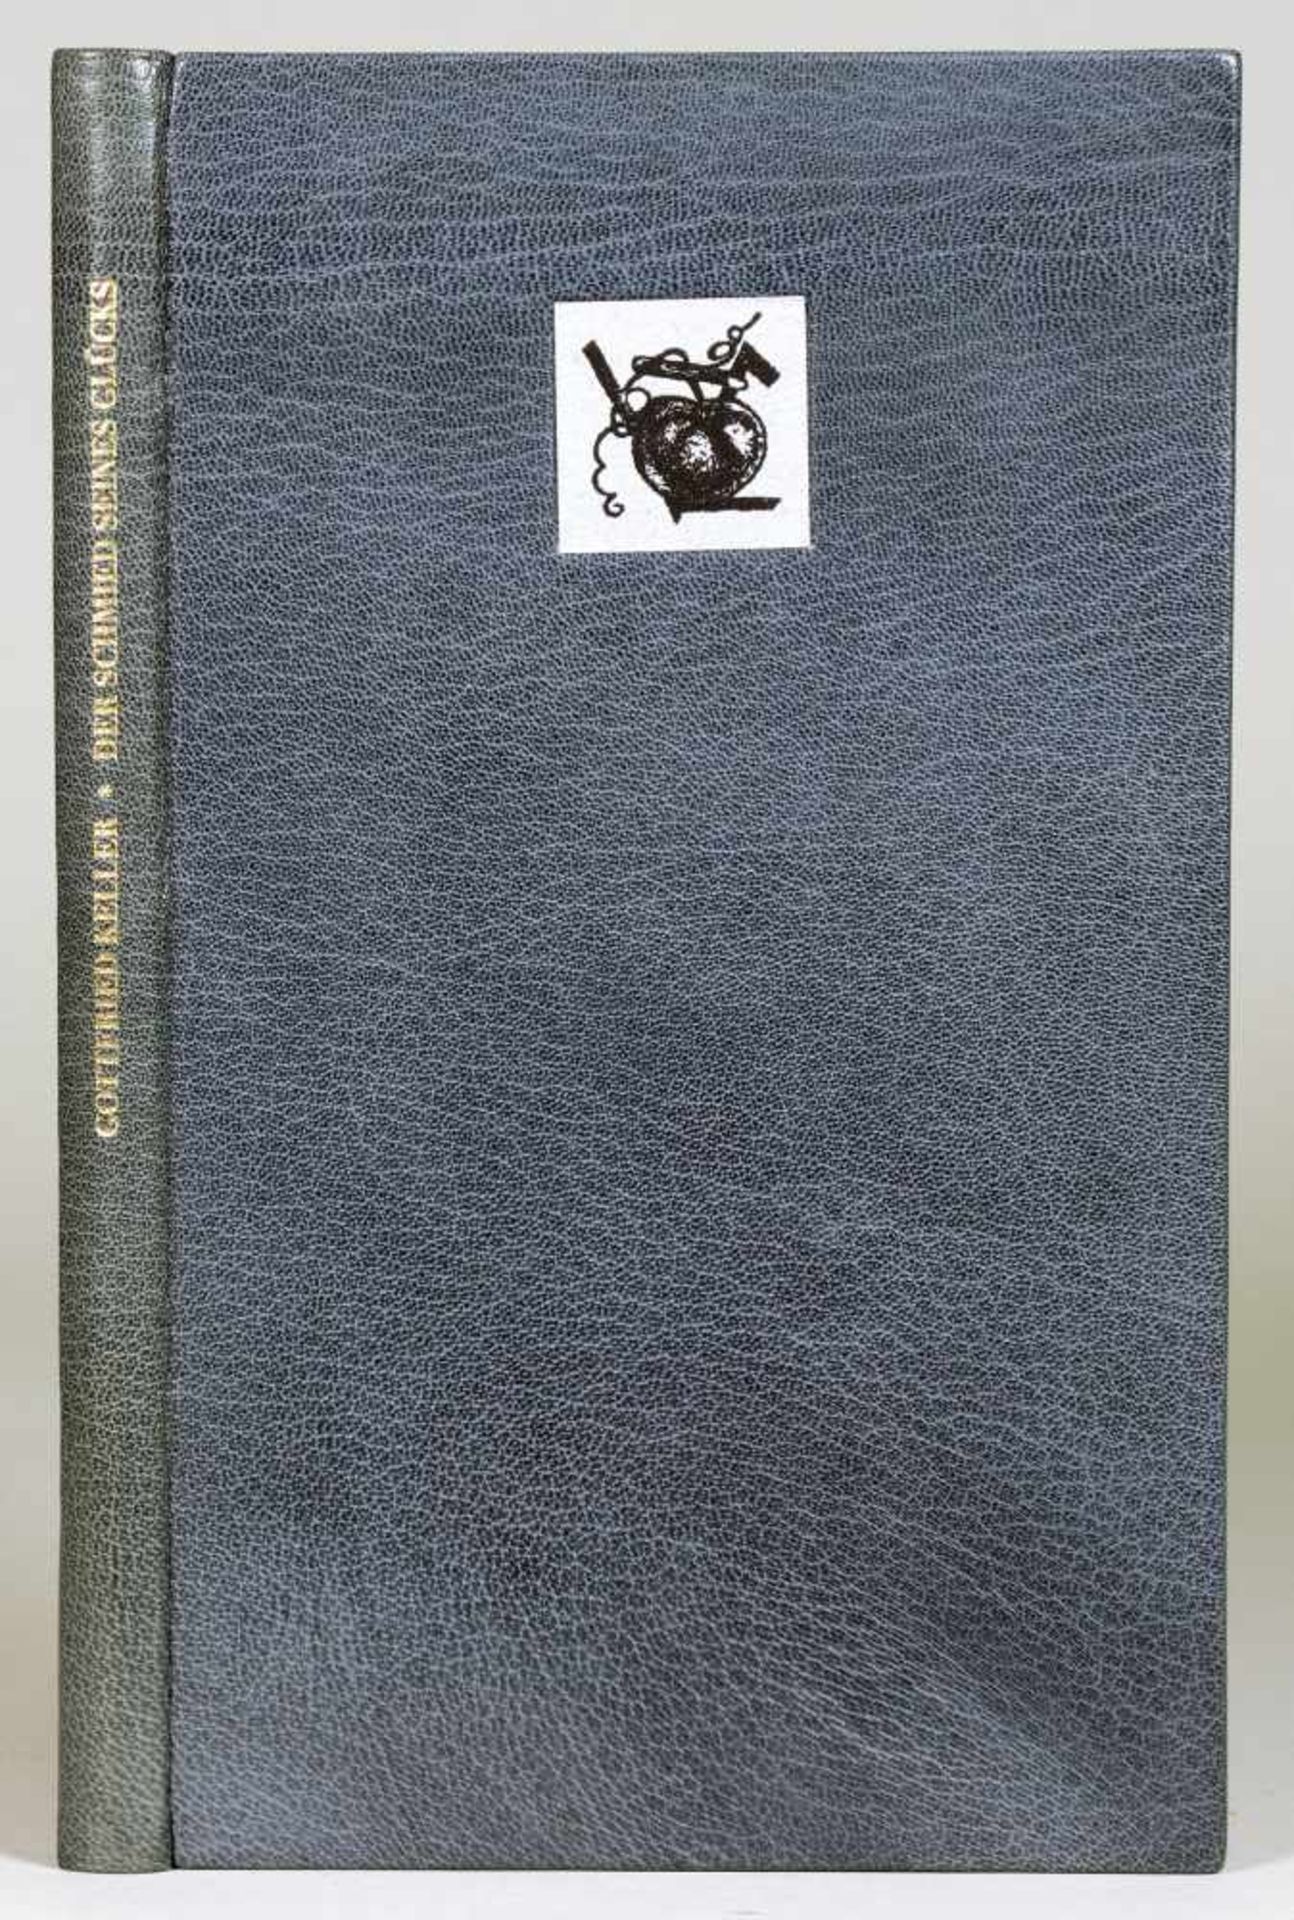 The Bear Press - Gottfried Keller. Der Schmied seines Glücks. Holzstiche von Karl-Georg Hirsch.